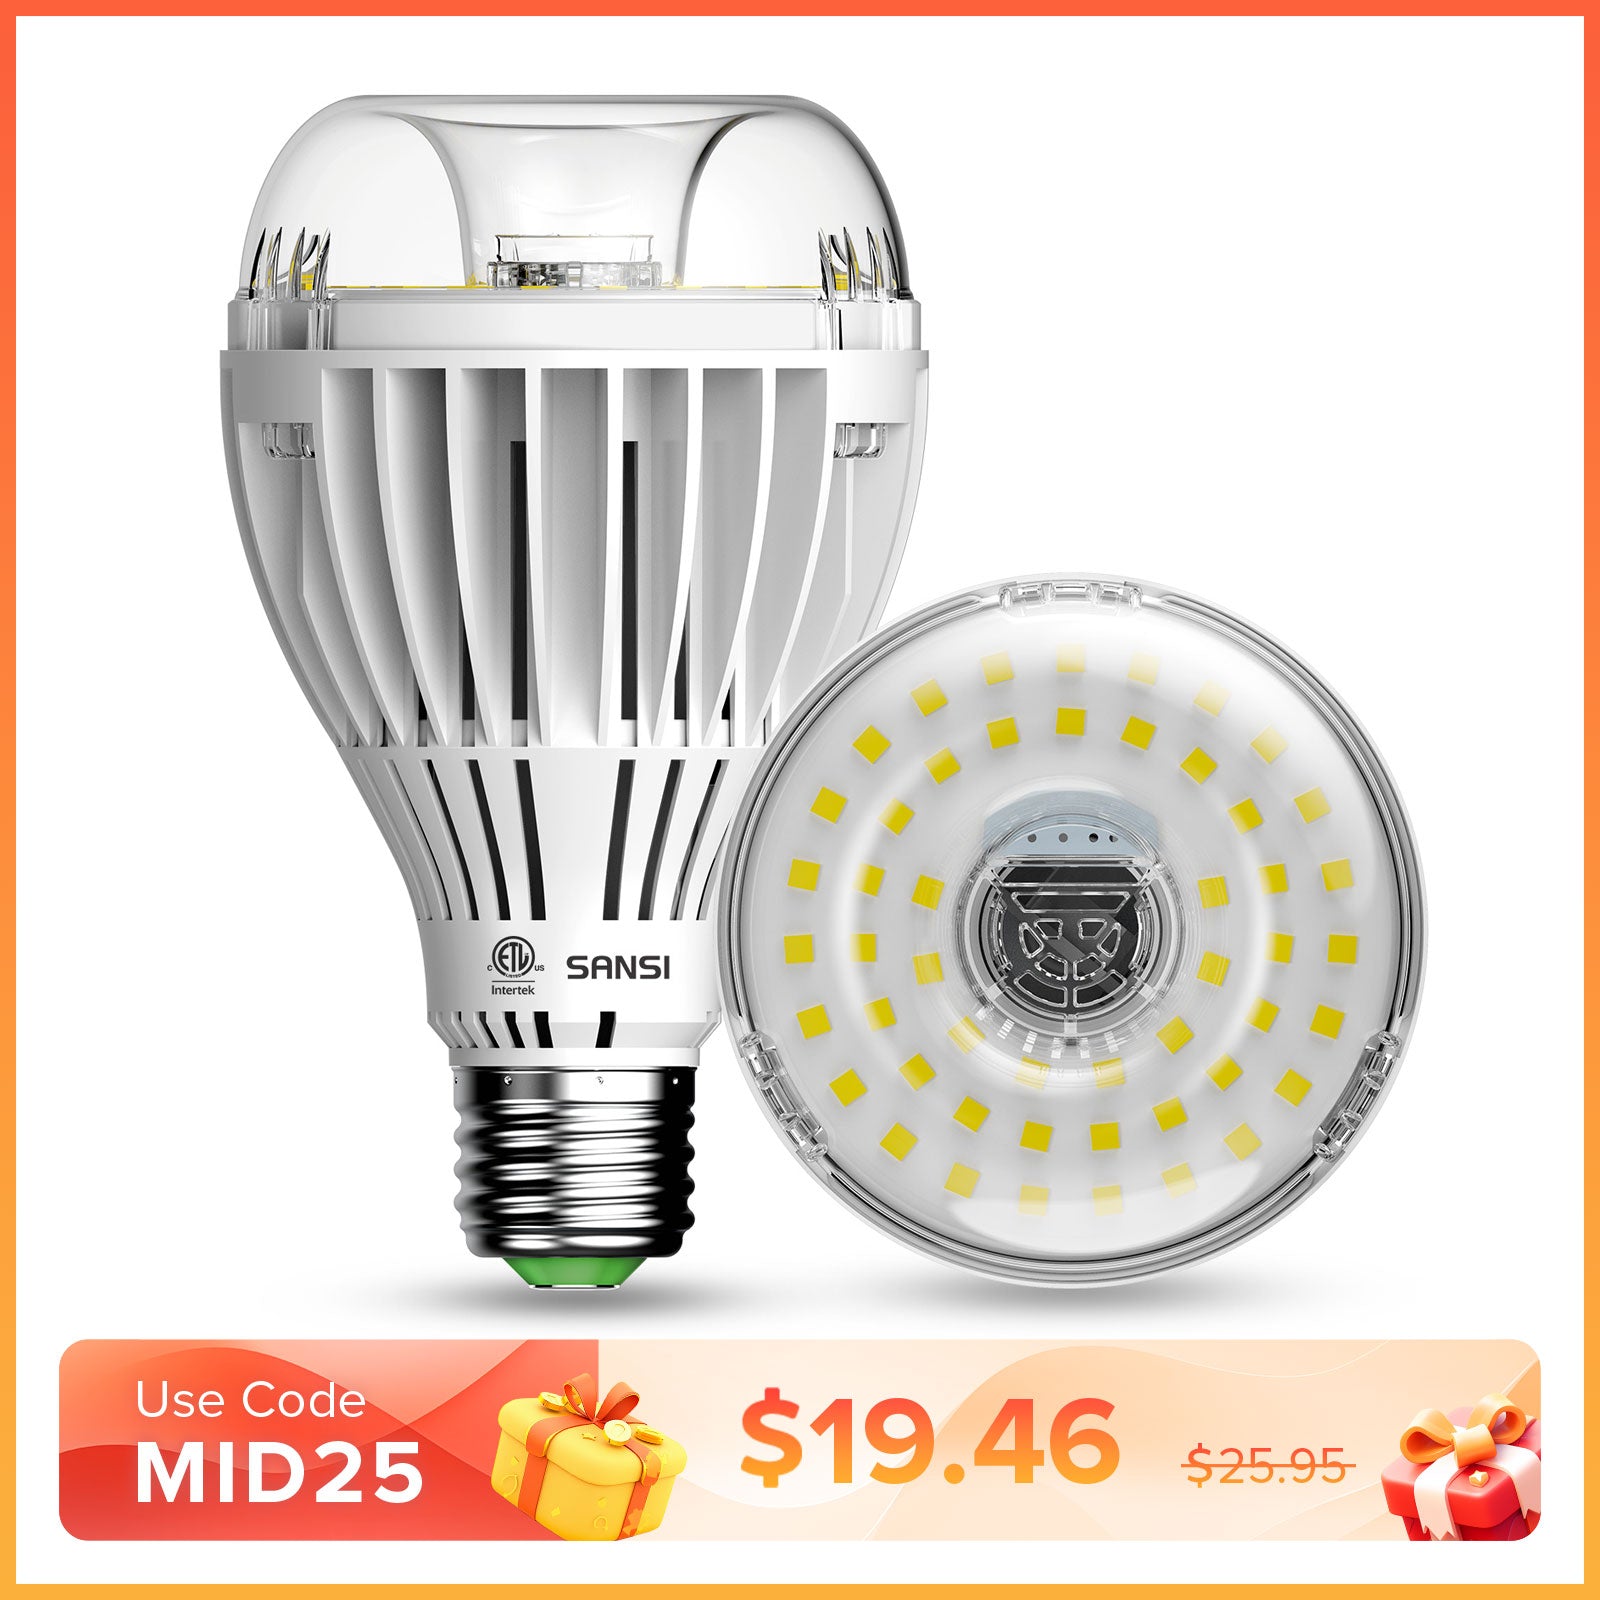 A21 24W LED Grow Light Bulb (US ONLY)